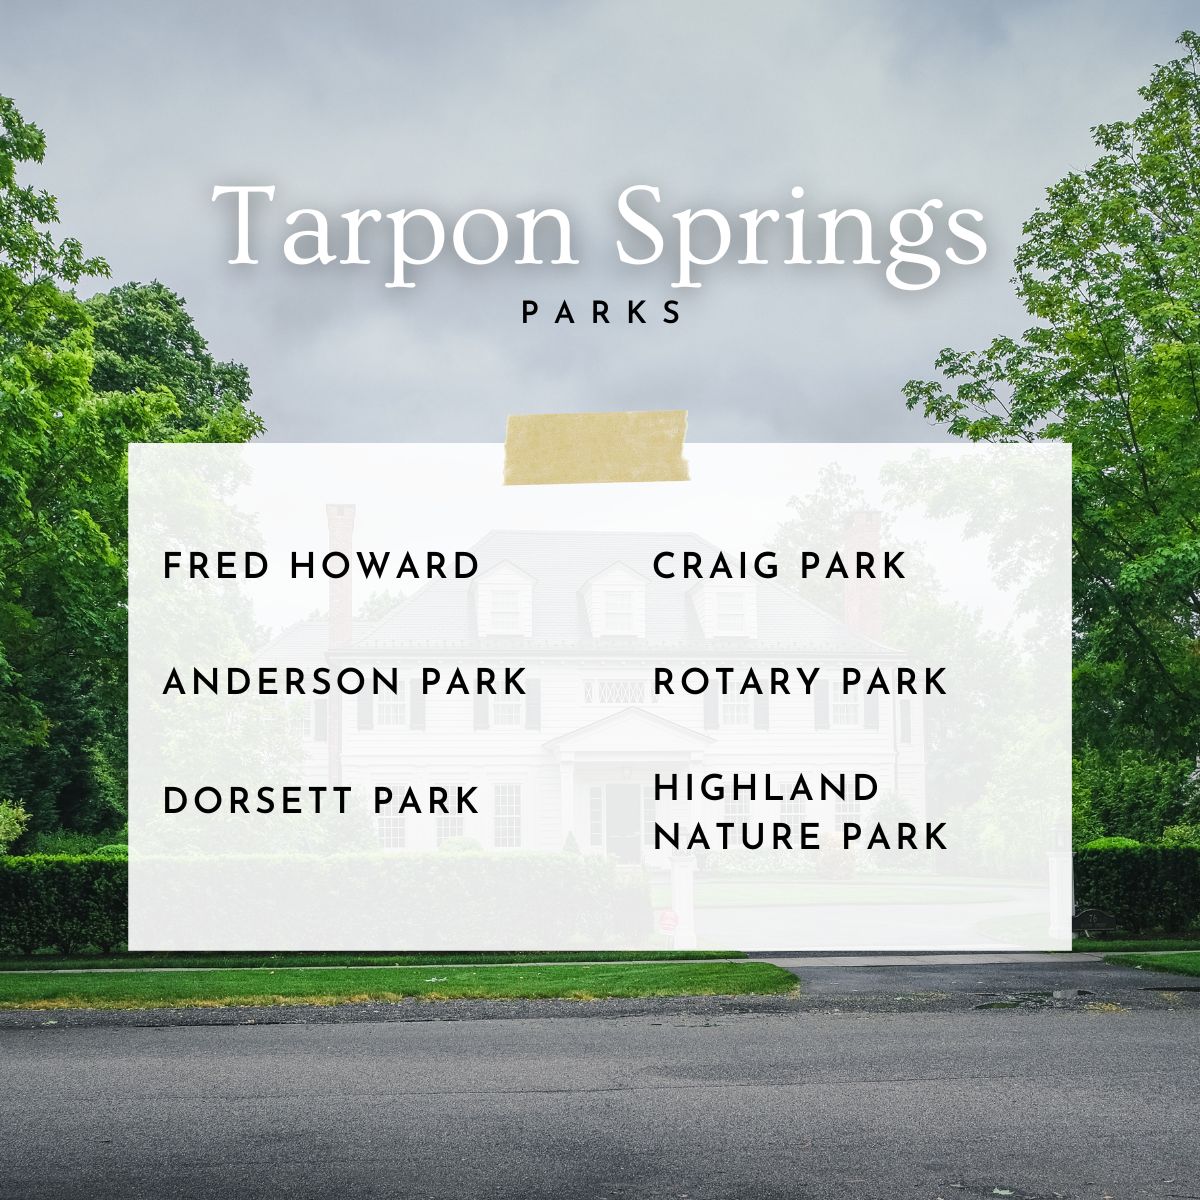 Tarpon Springs Parks